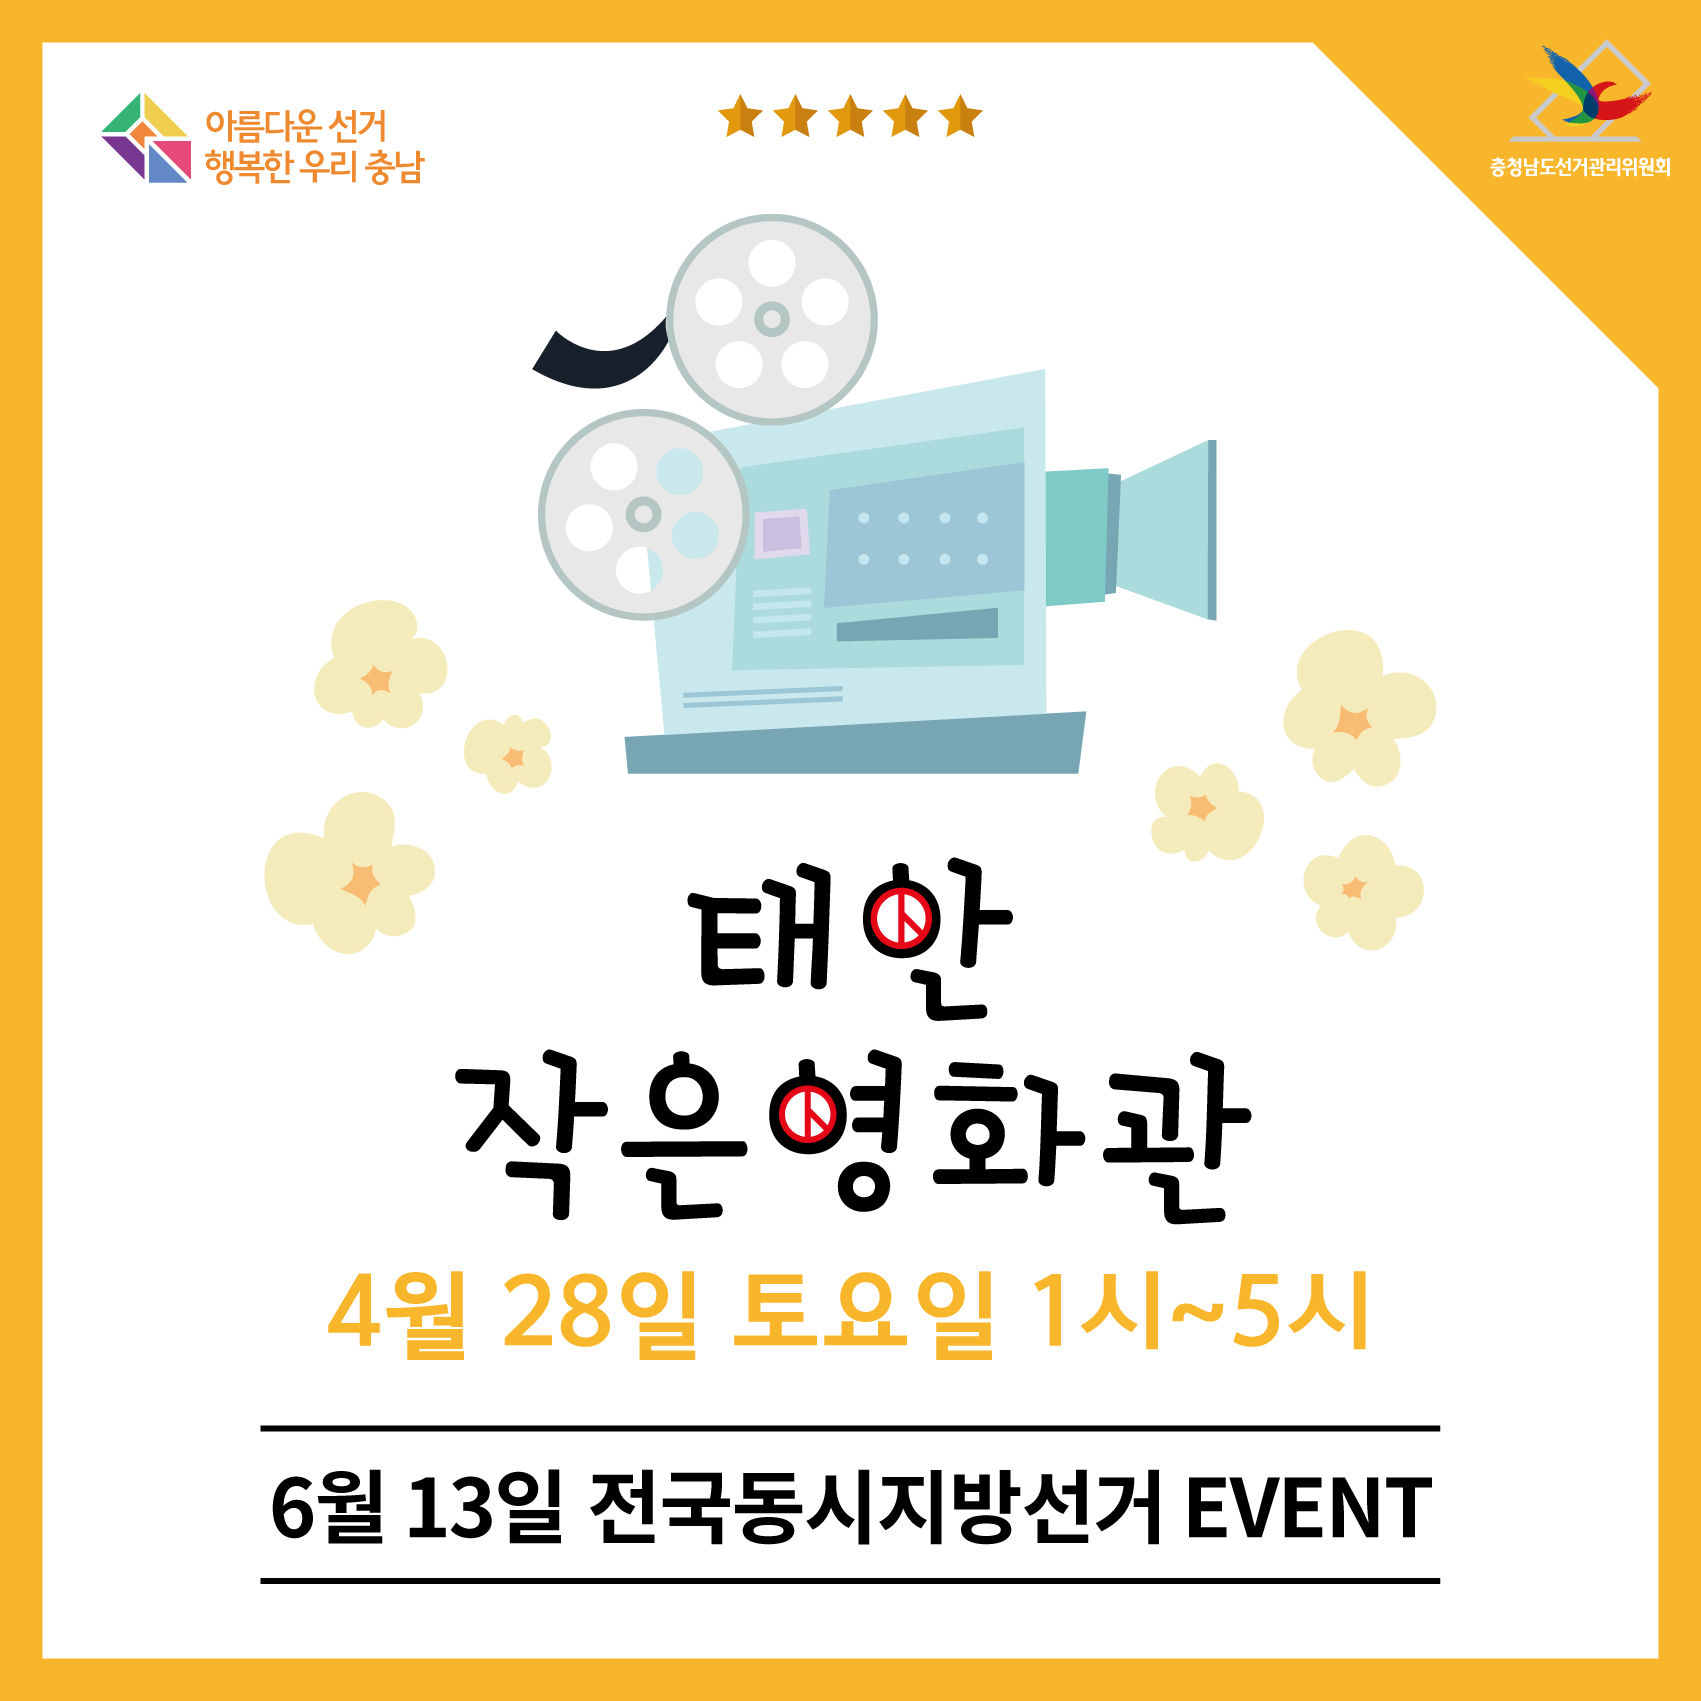 태안 작은영화관 4월 28일 토요일 1시~5시(6월 13일 전국동시지방선거 EVENT)